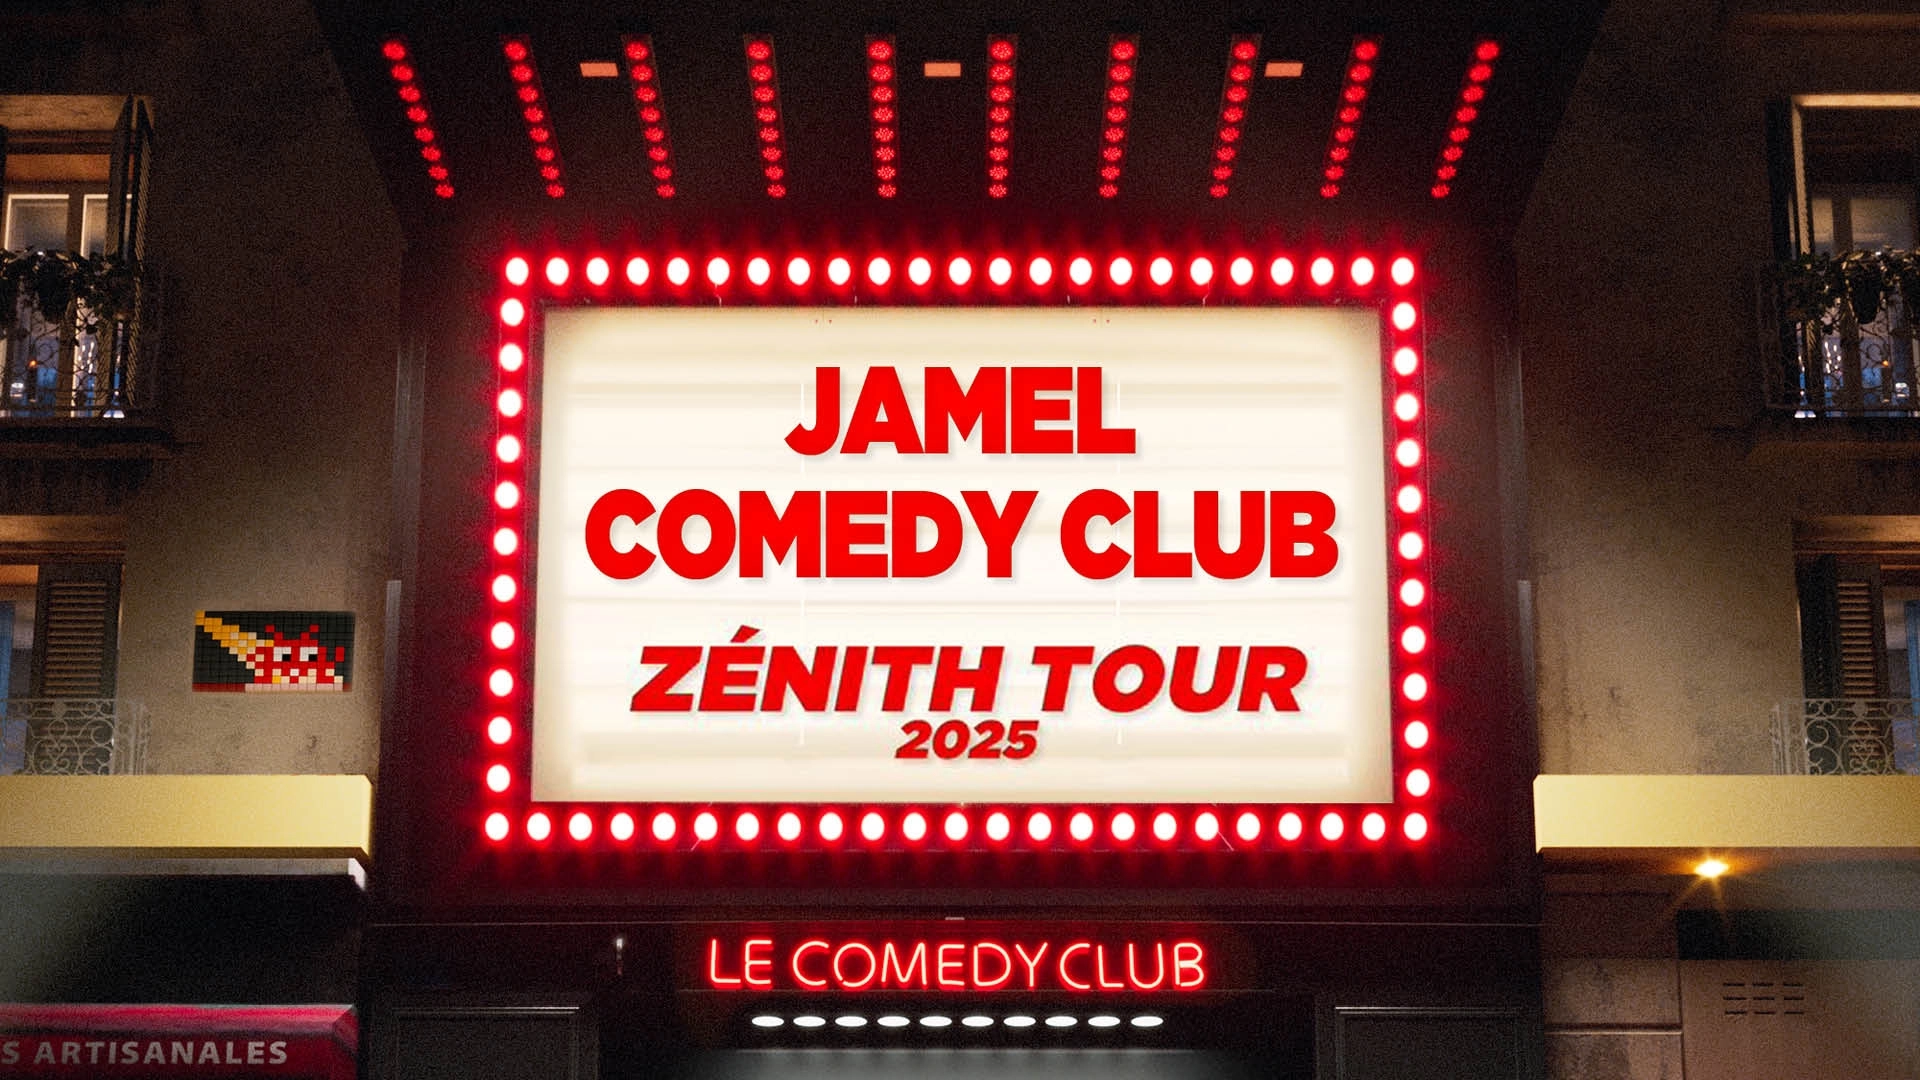 Jamel Comedy Club Zenith Tour 2025 at Zenith Montpellier Tickets